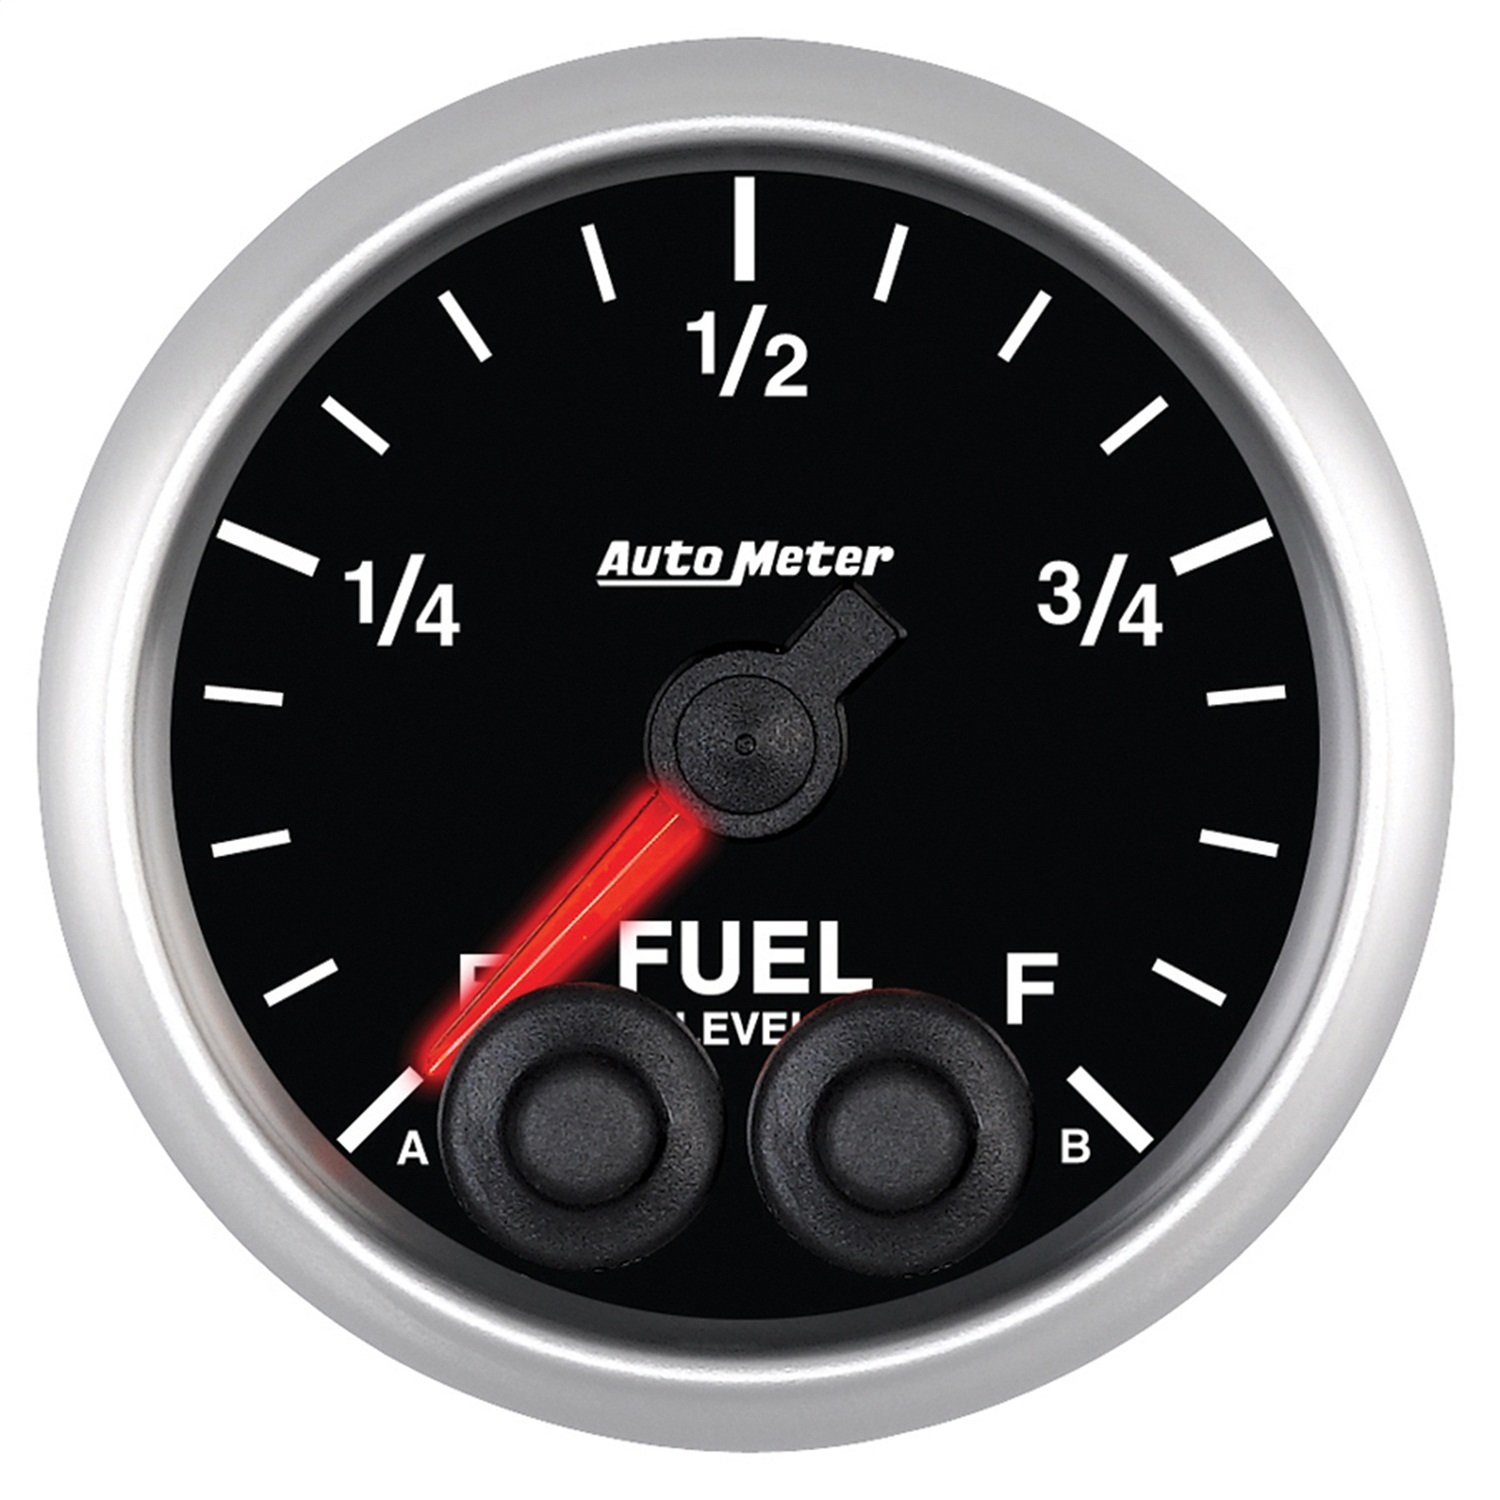 Auto Meter Auto Meter 5609 Elite Series; Programmable Fuel Level Gauge